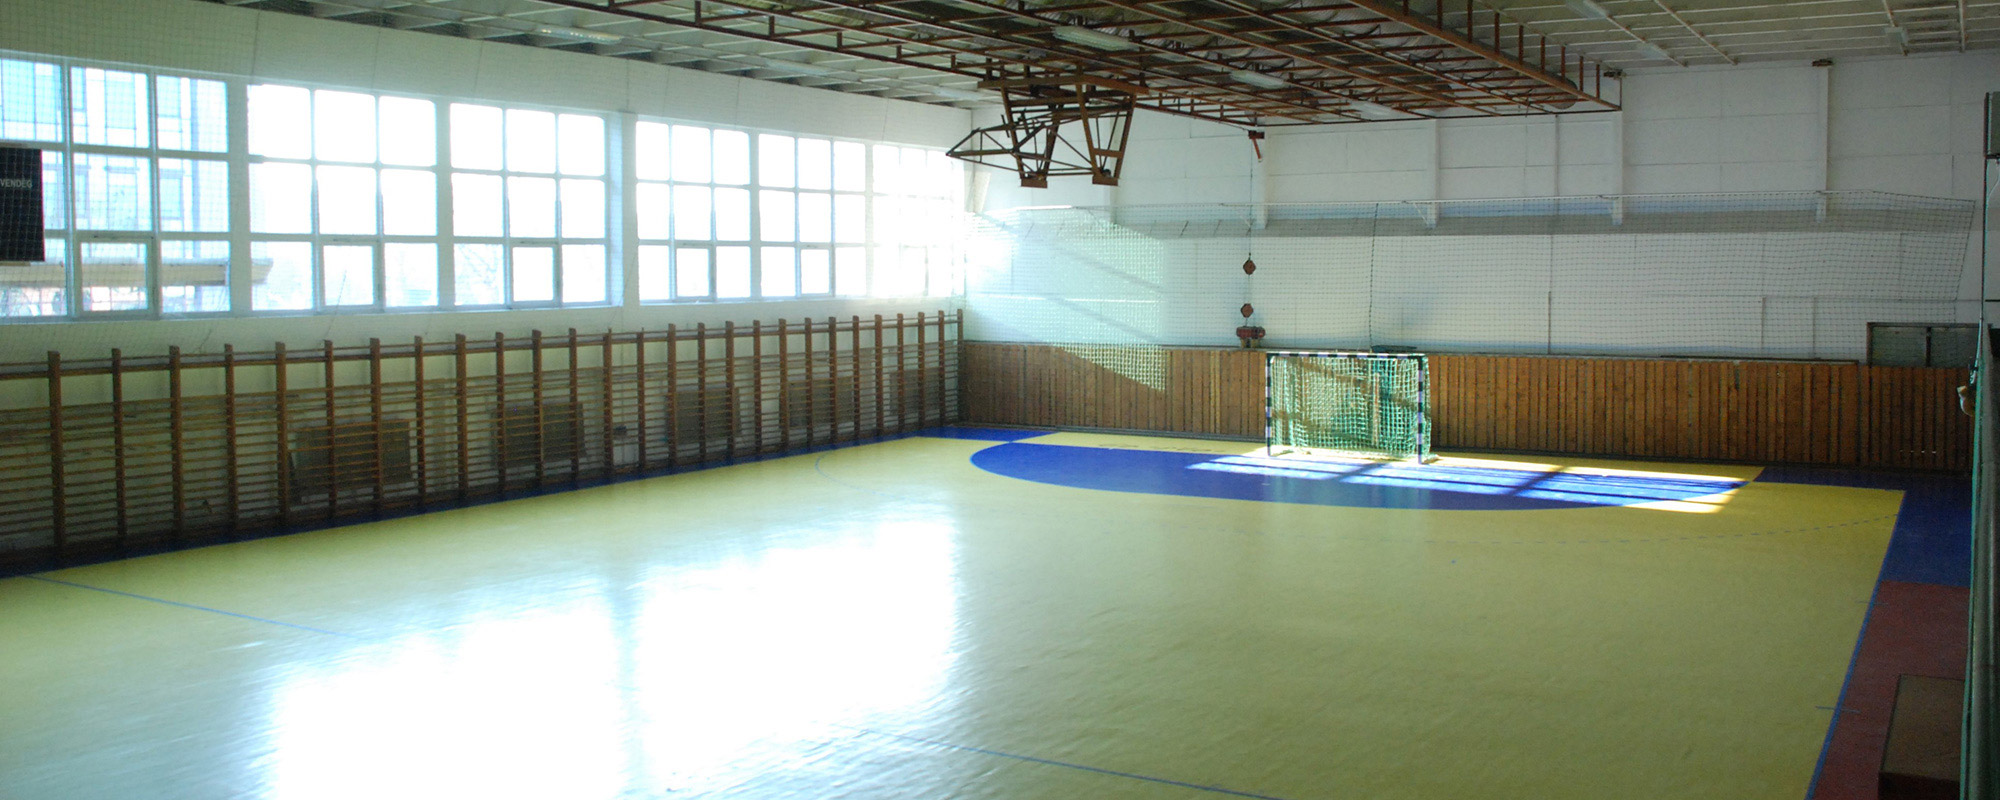 Pénzügyőr - Sporthalle Rekonstruktion - 2013